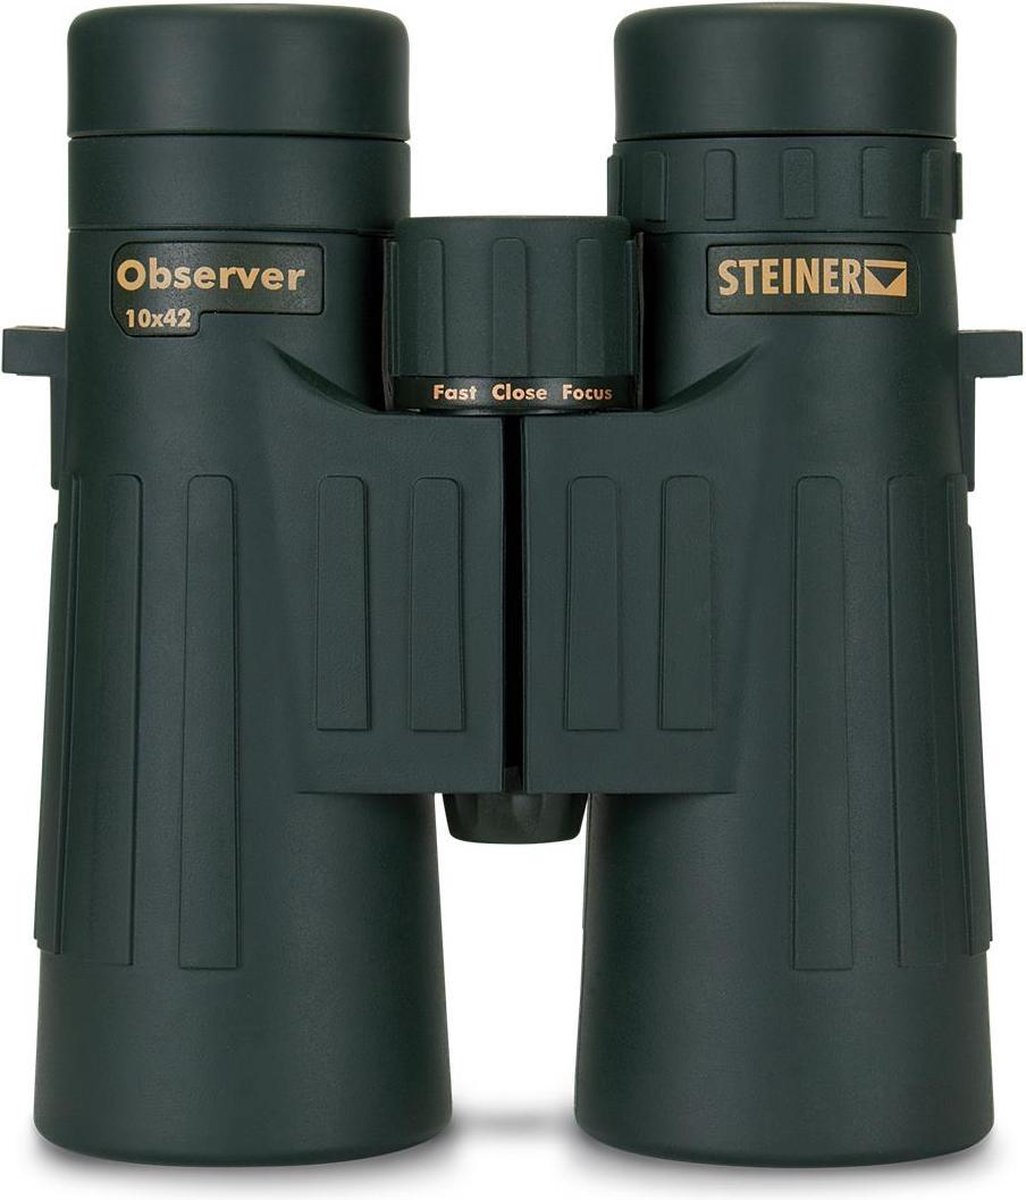 Steiner Observer 10x42 - Verrekijker - Makrolon behuizing - Groen